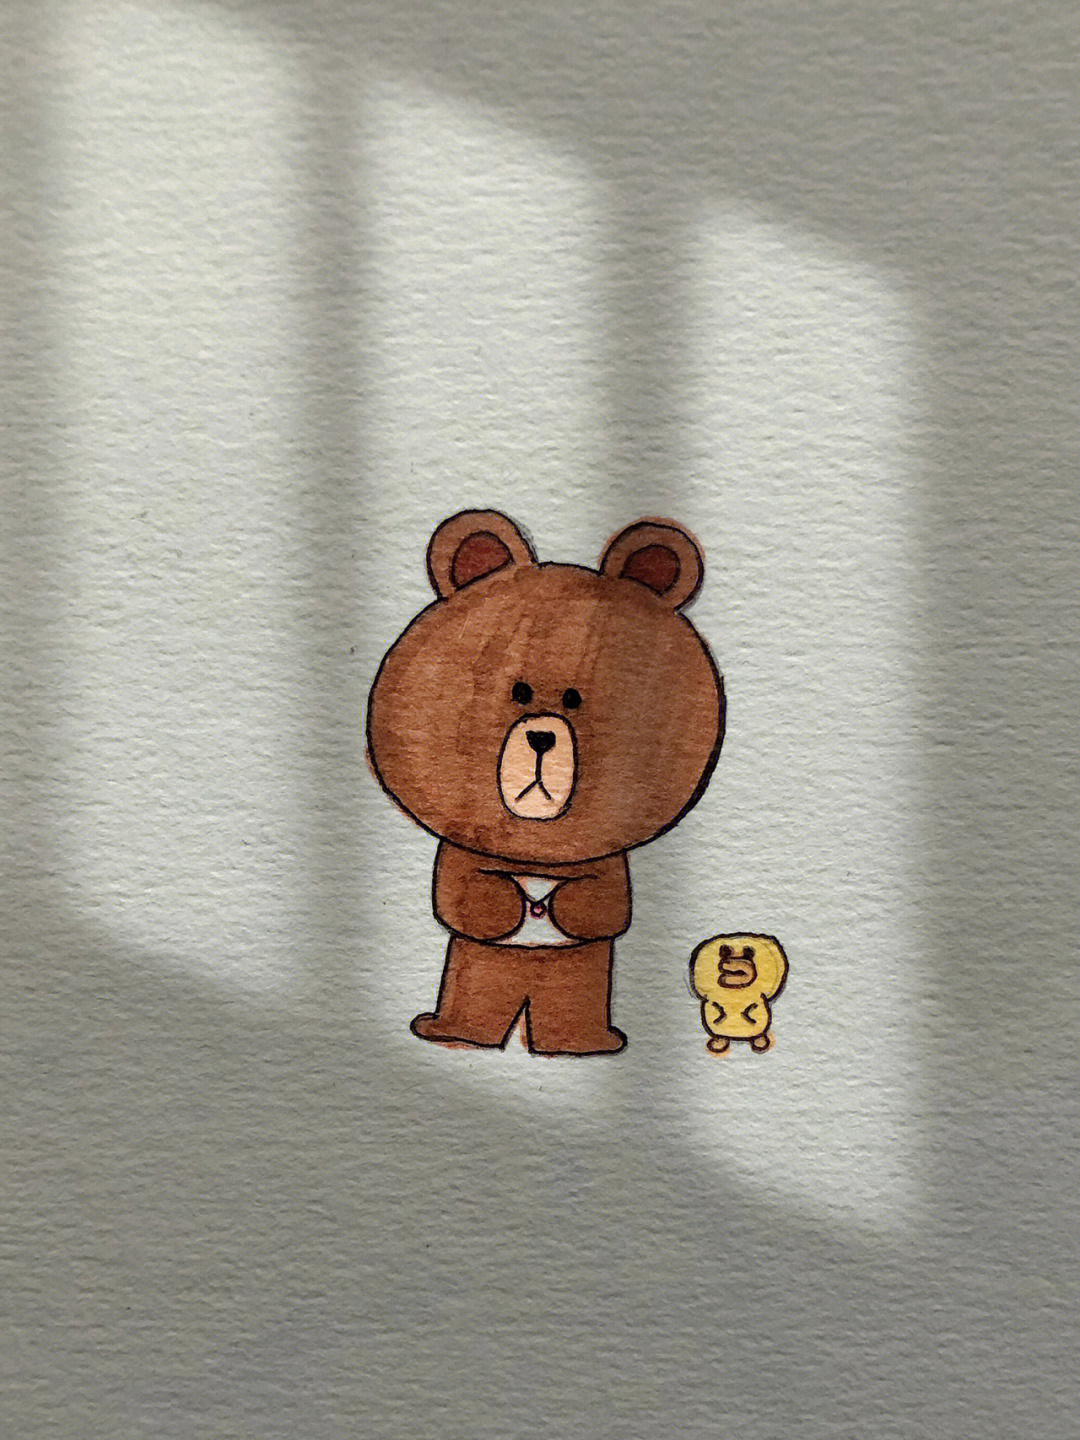 布朗熊简笔画可爱图片